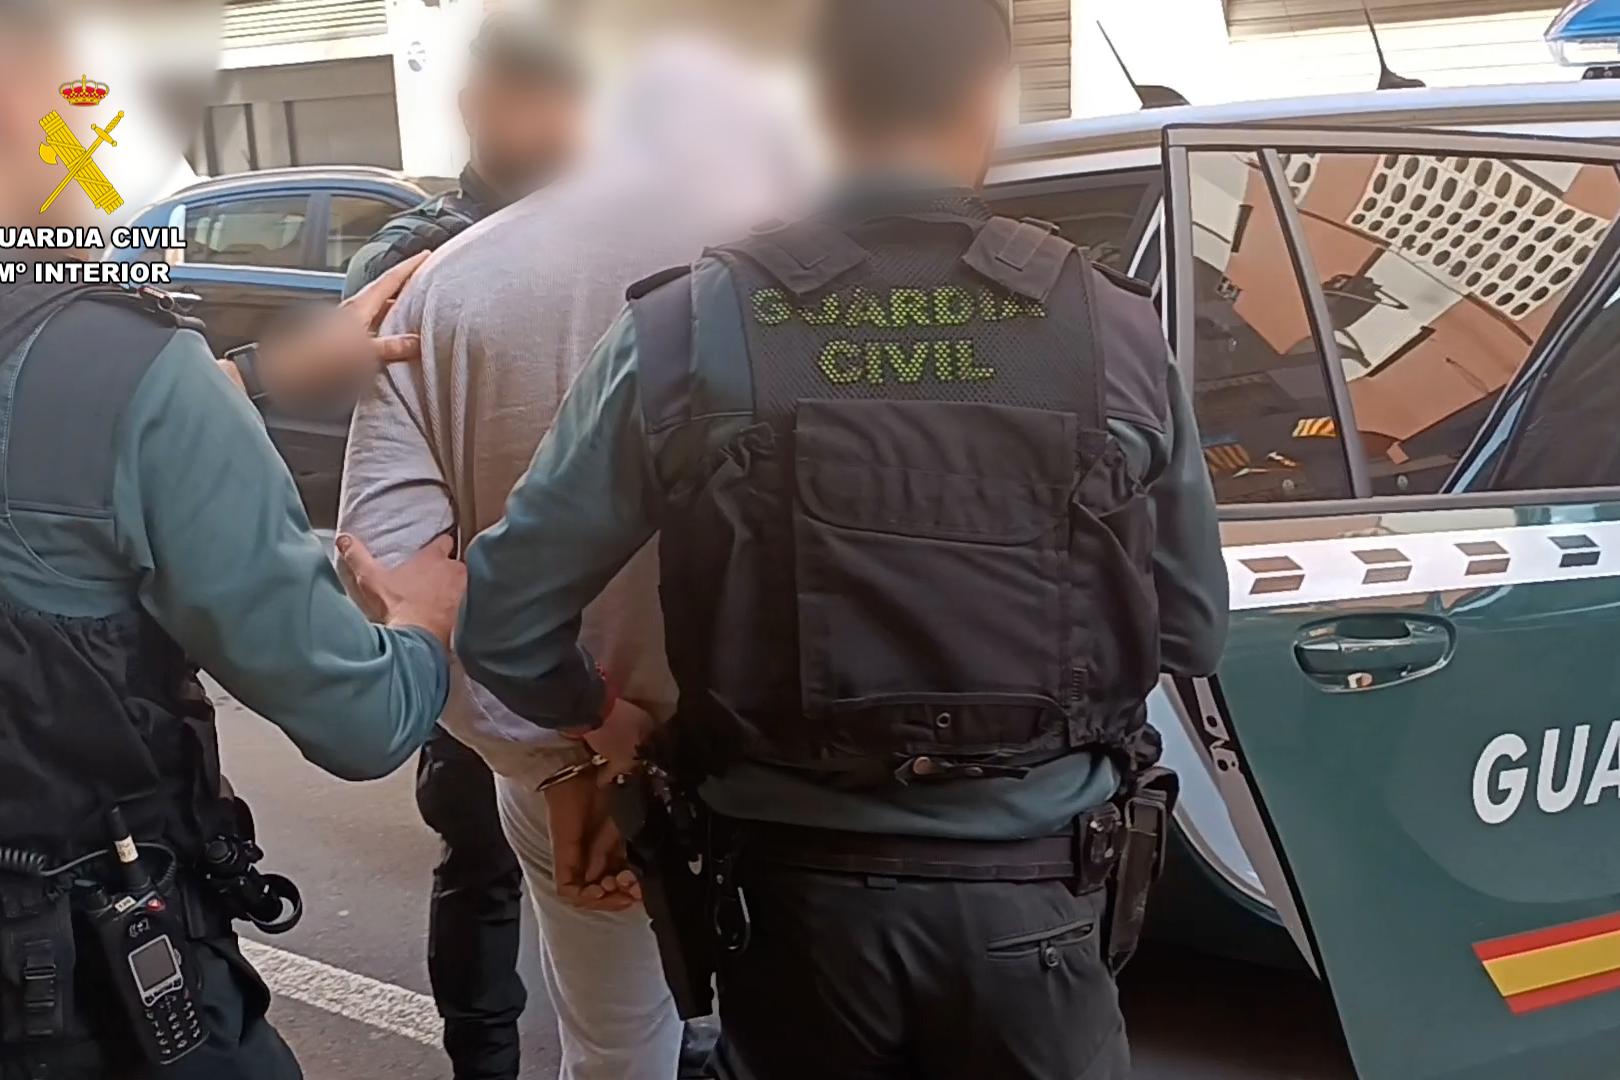 La guardia civil procede a introducir a uno de los detenidos en el coche